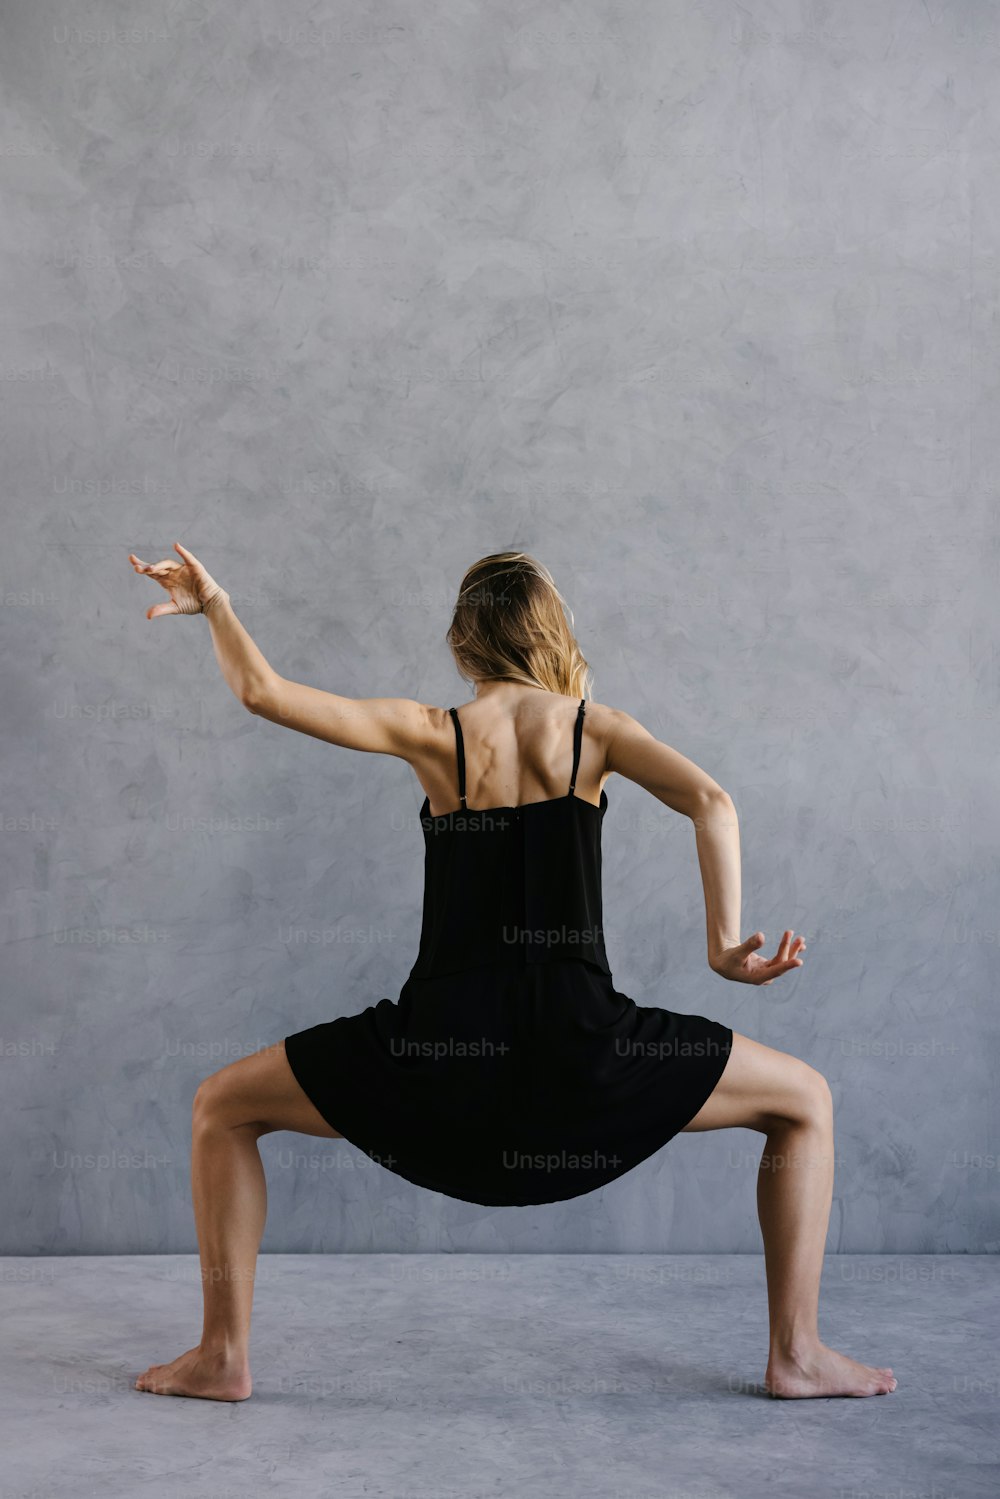 Une femme en robe noire fait une pose de yoga